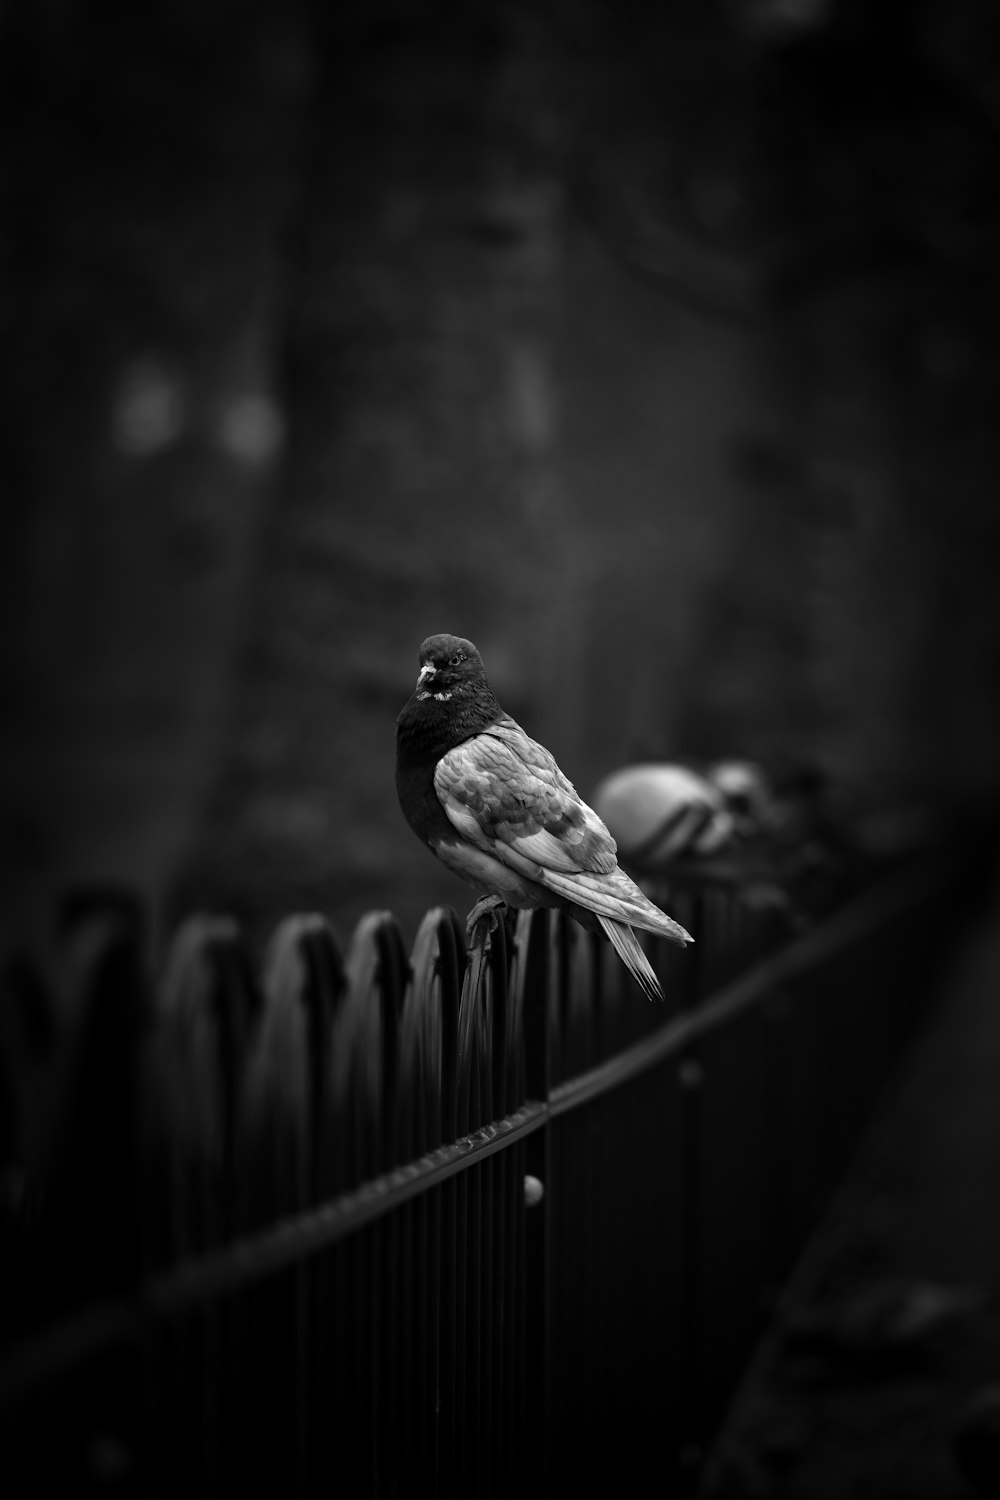 黒い柵の上の鳩のグレースケール写真